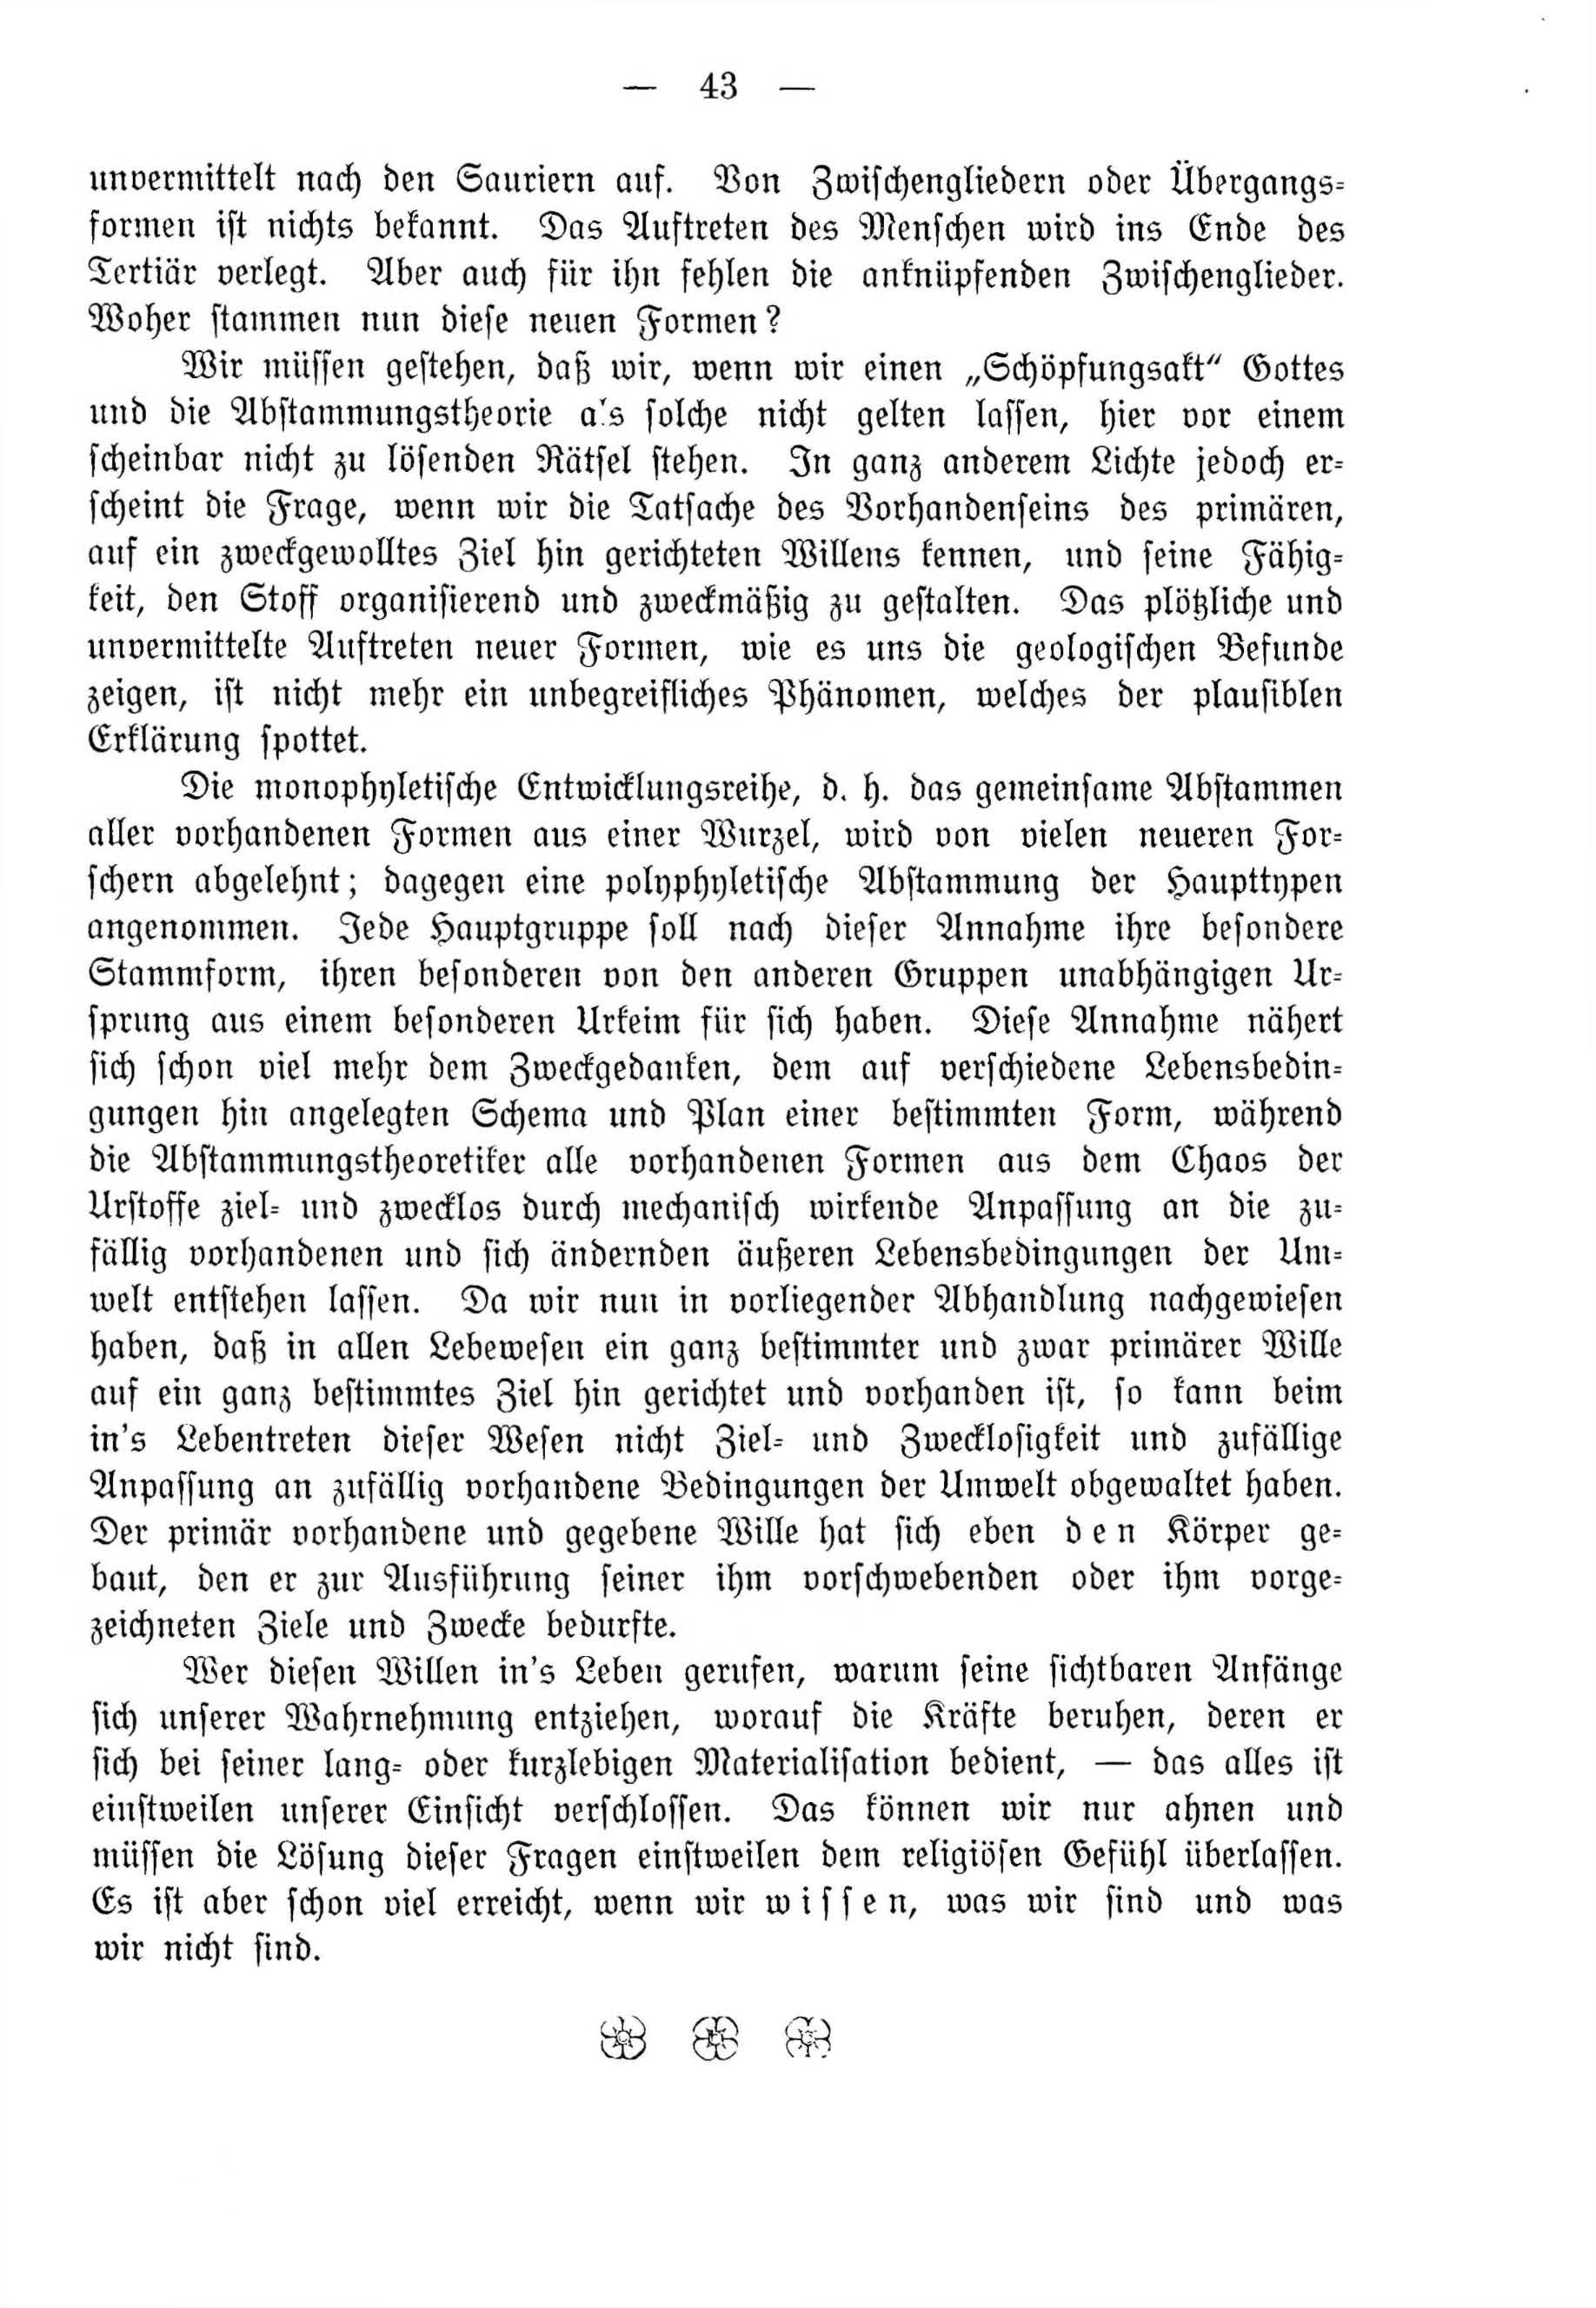 Deutsche Monatsschrift für Russland [4] (1915) | 43. (43) Основной текст